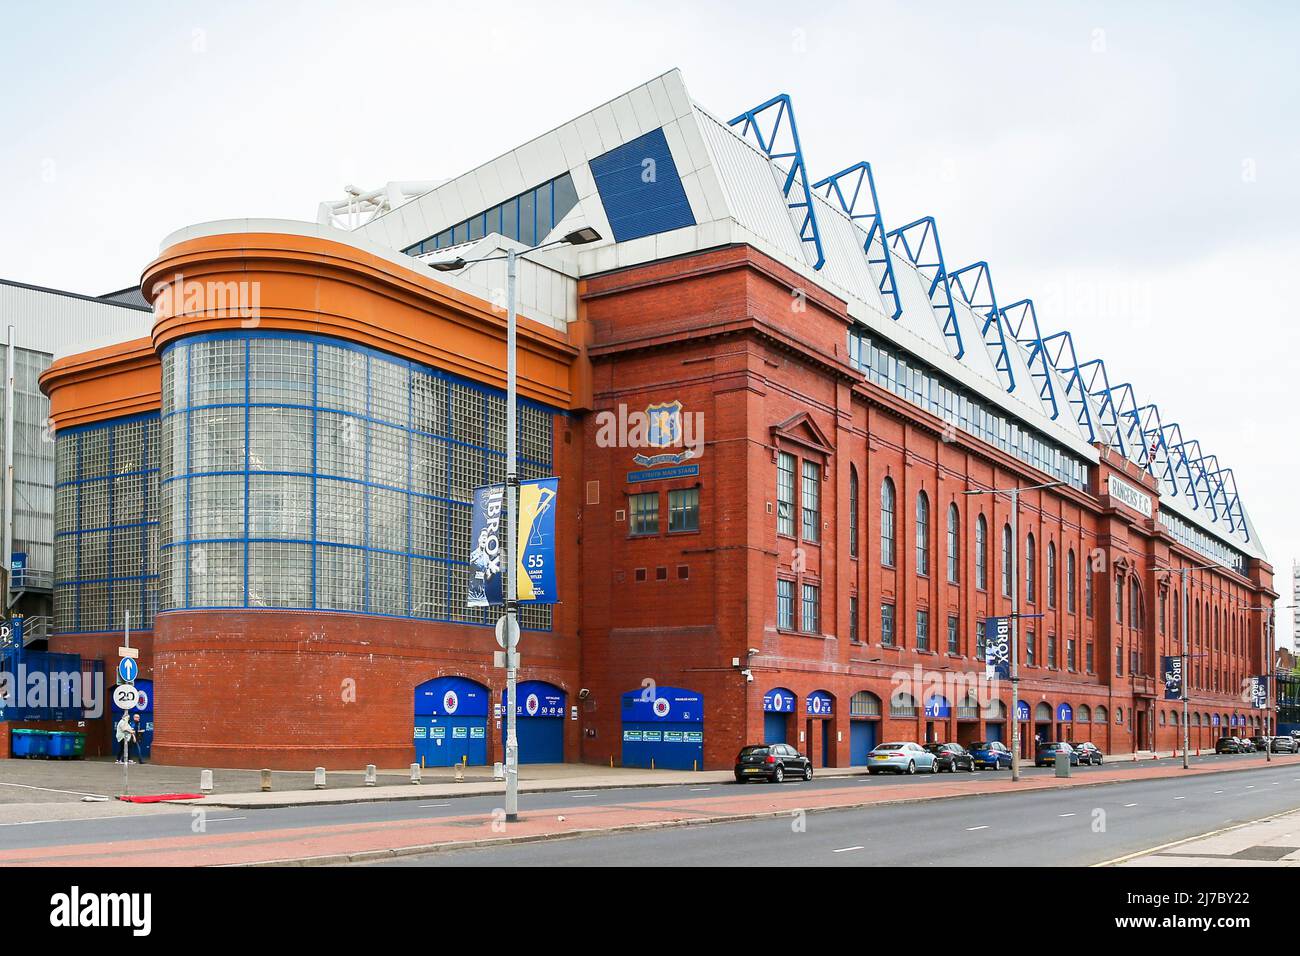 Entrée au stade de football Ibrox, stade des Rangers FC, Glasgow, Écosse, Royaume-Uni Banque D'Images